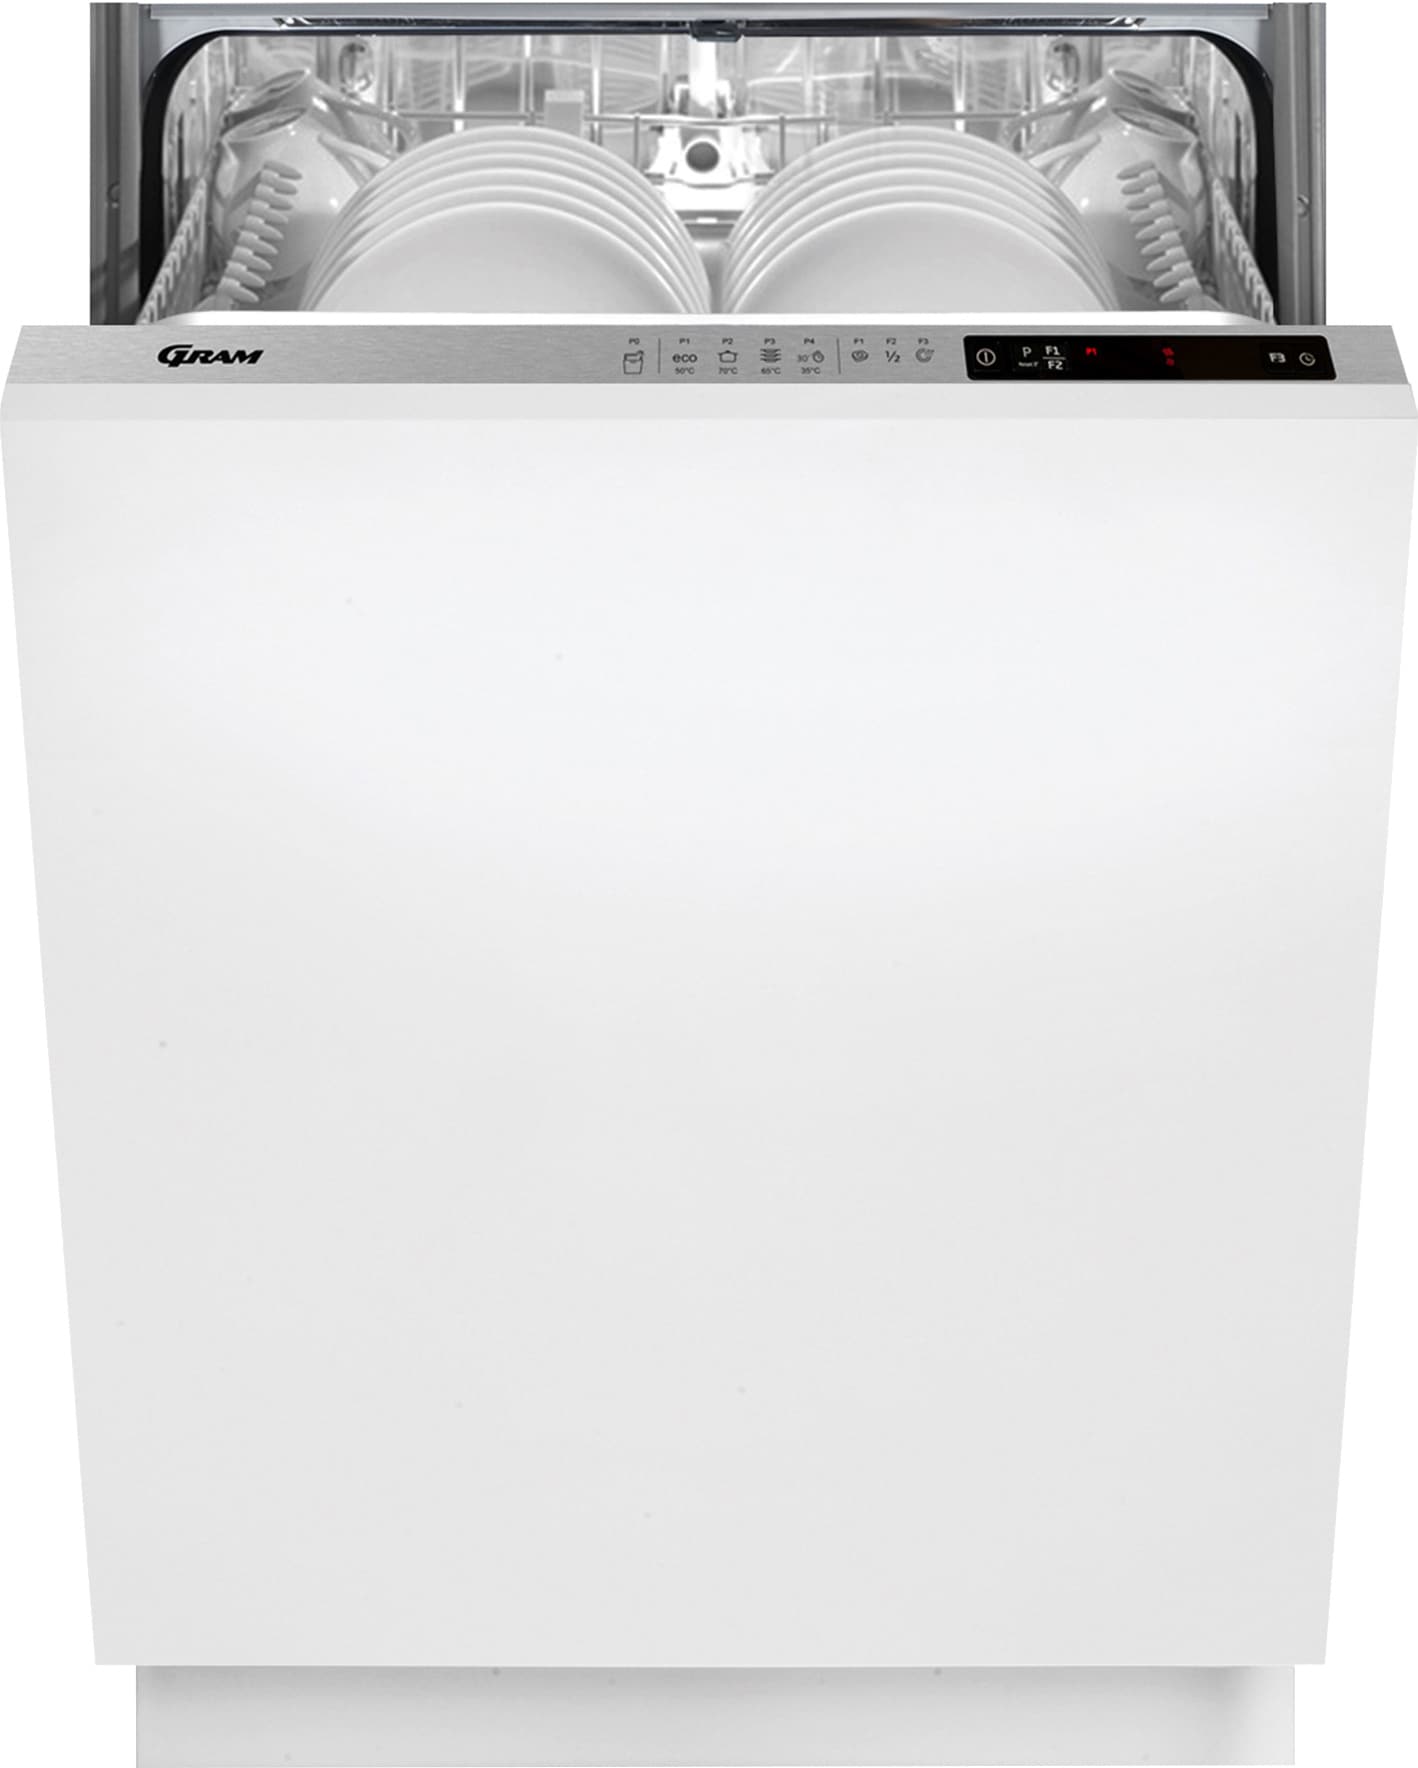 Gram opvaskemaskine OMI62081 Integreret | Elgiganten